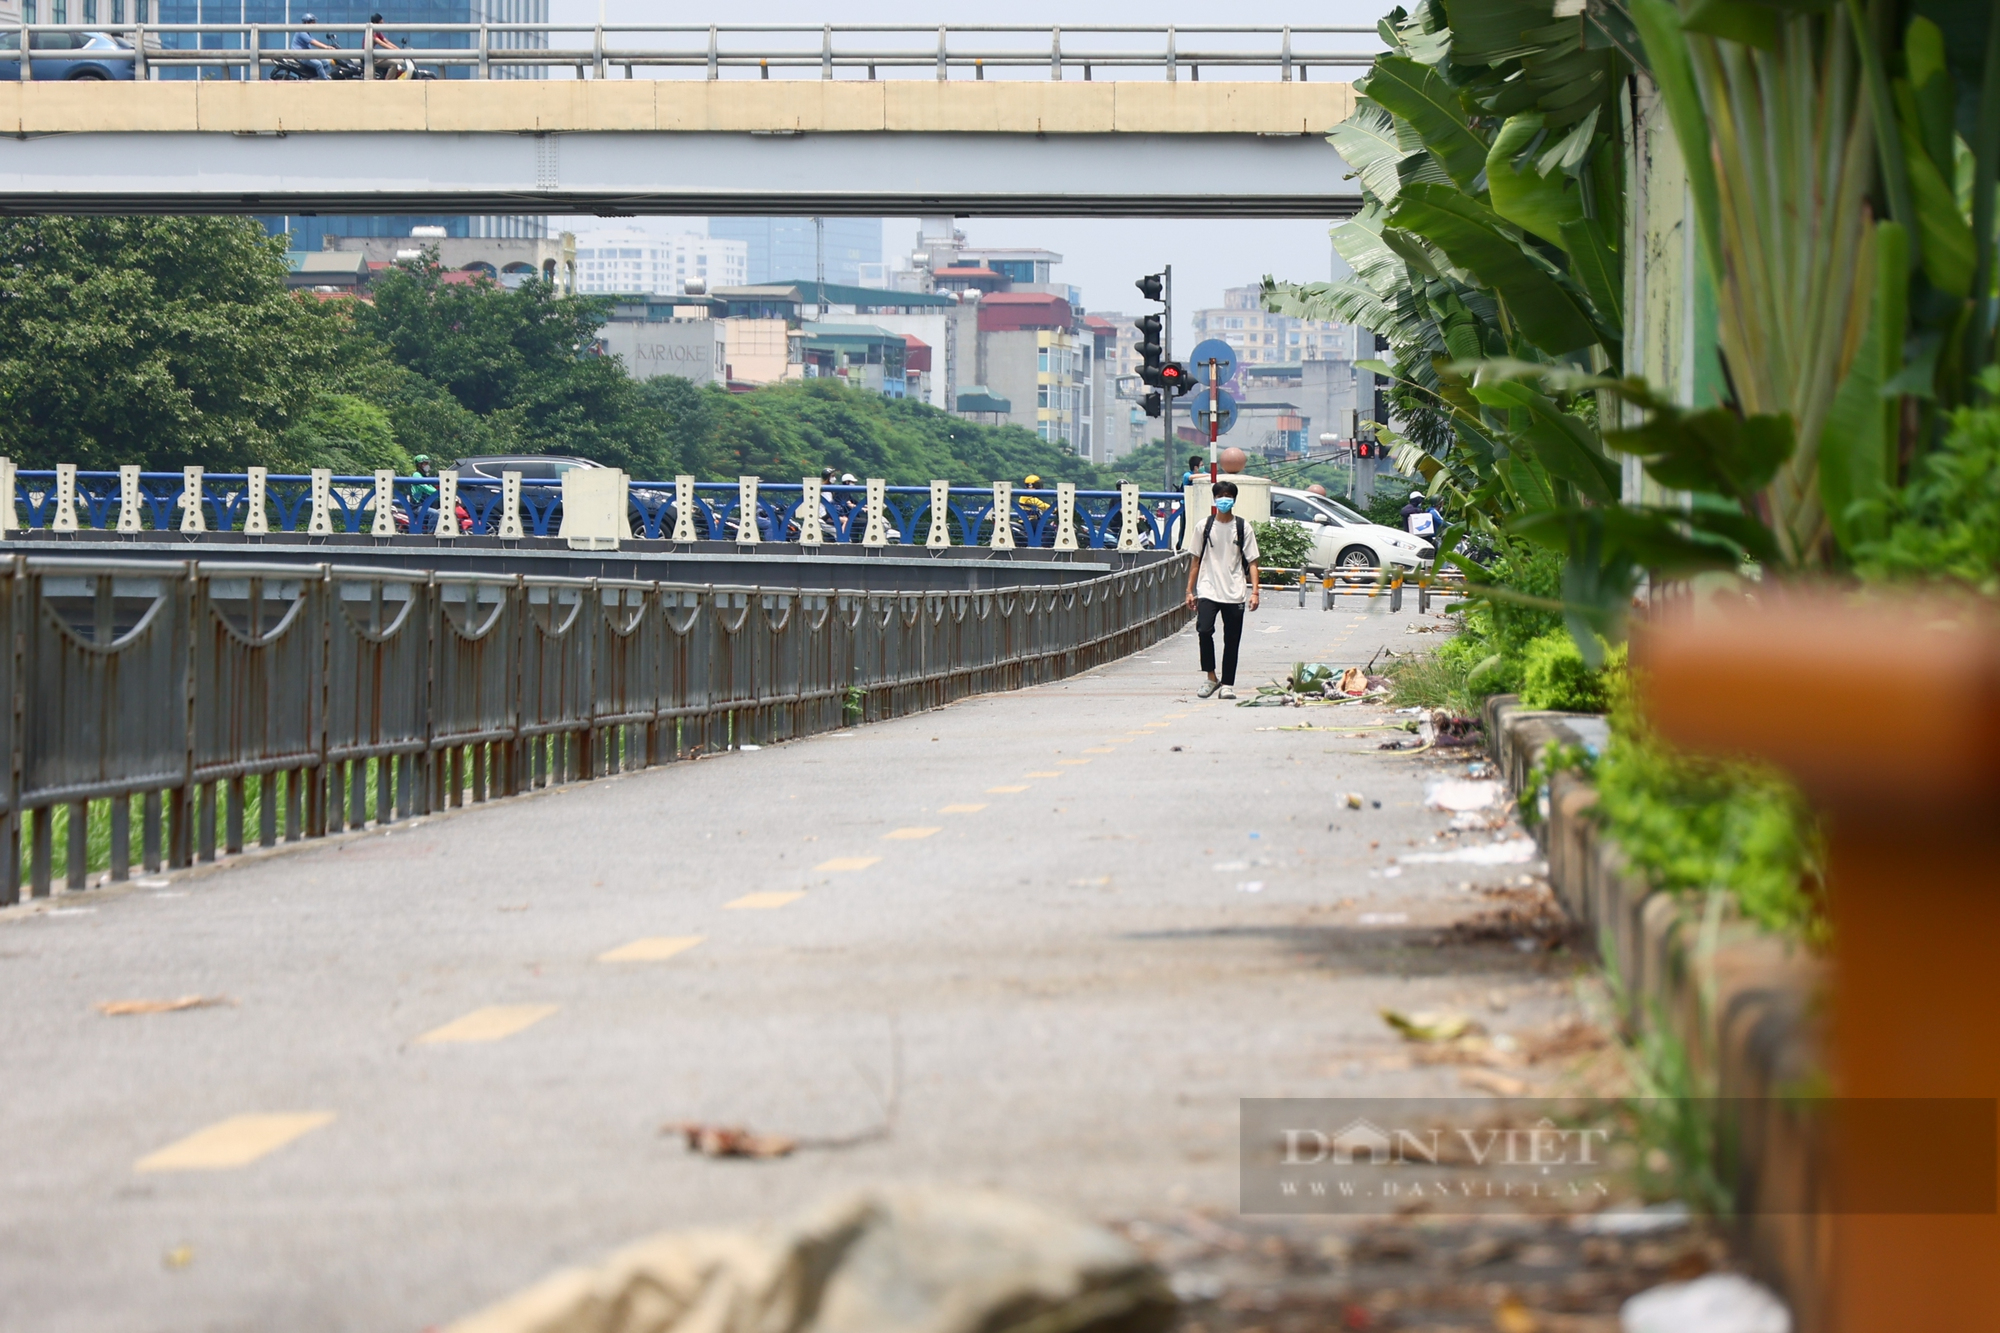 Đường đi bộ 64 tỉ đồng ven sông Tô Lịch thành nơi tập kết hàng rong, rác thải - Ảnh 2.